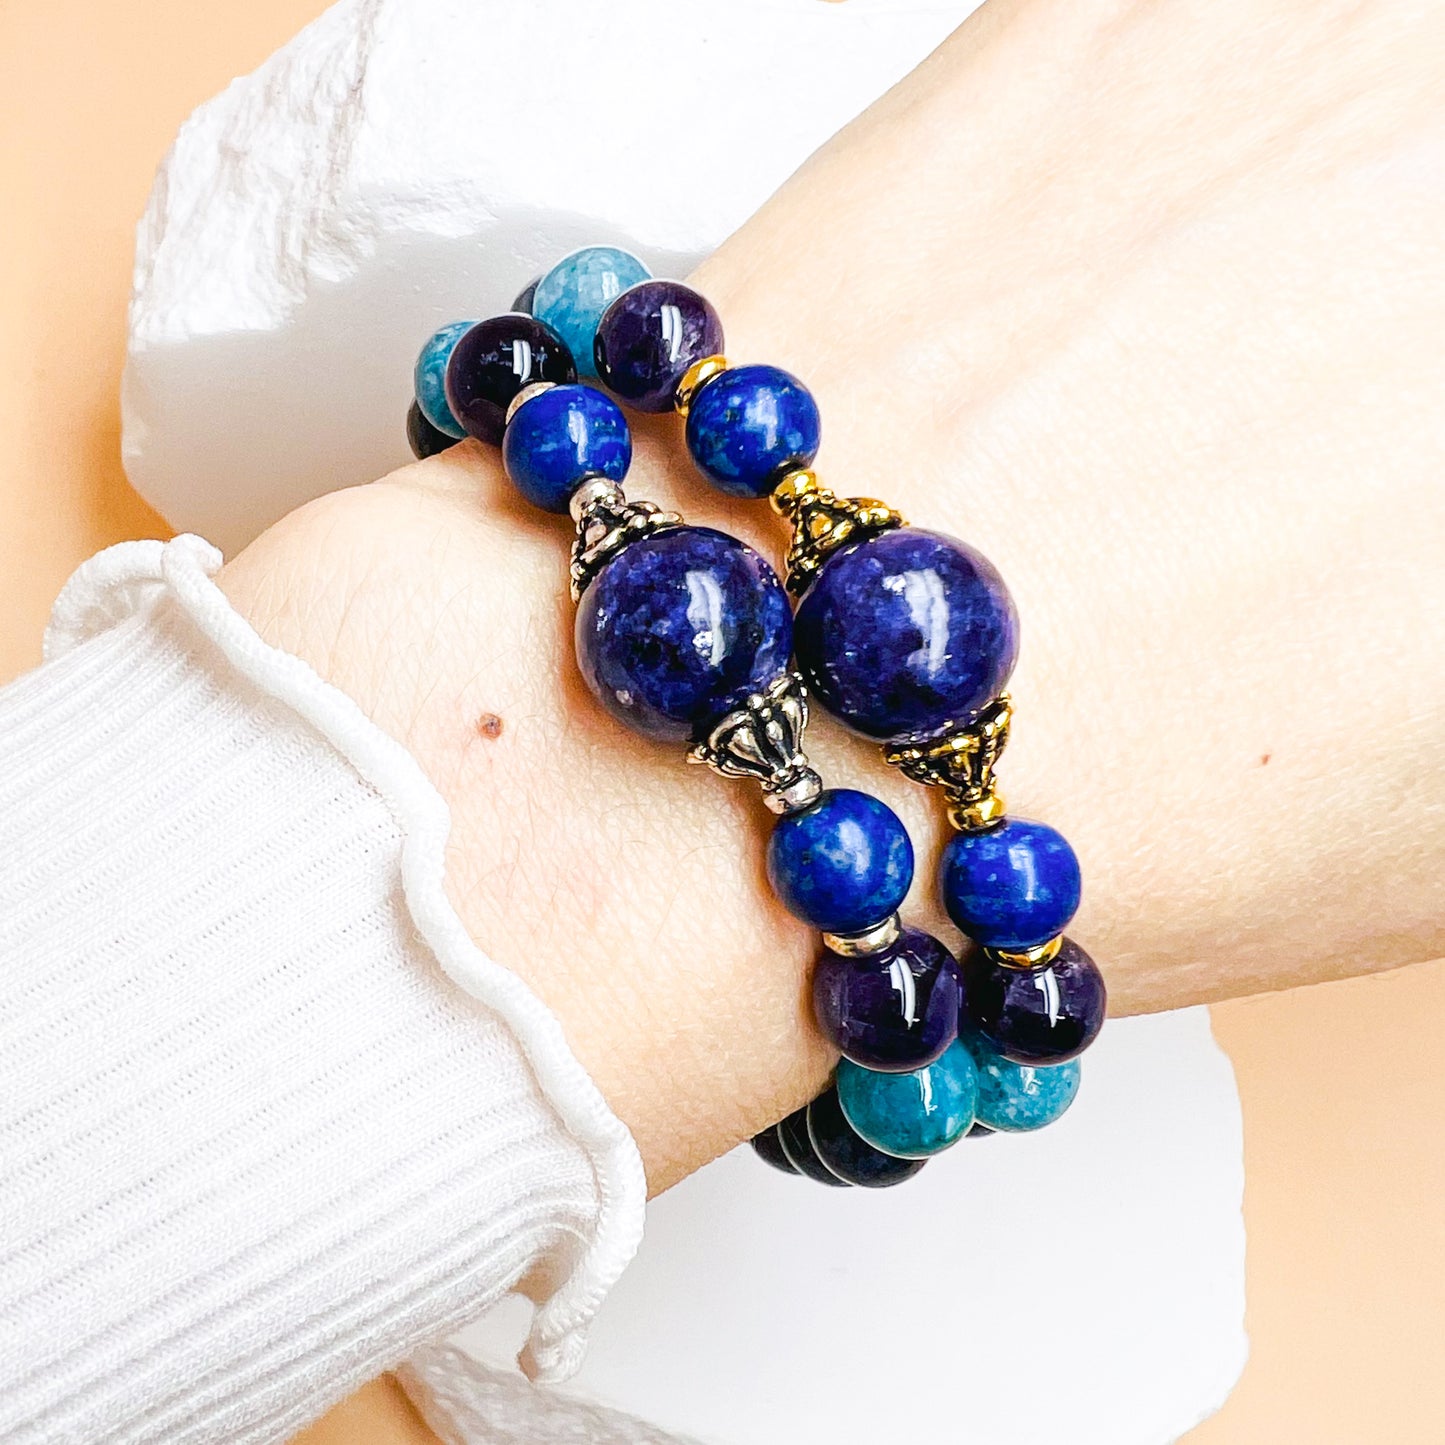 Blue gemstone bracelet for strength